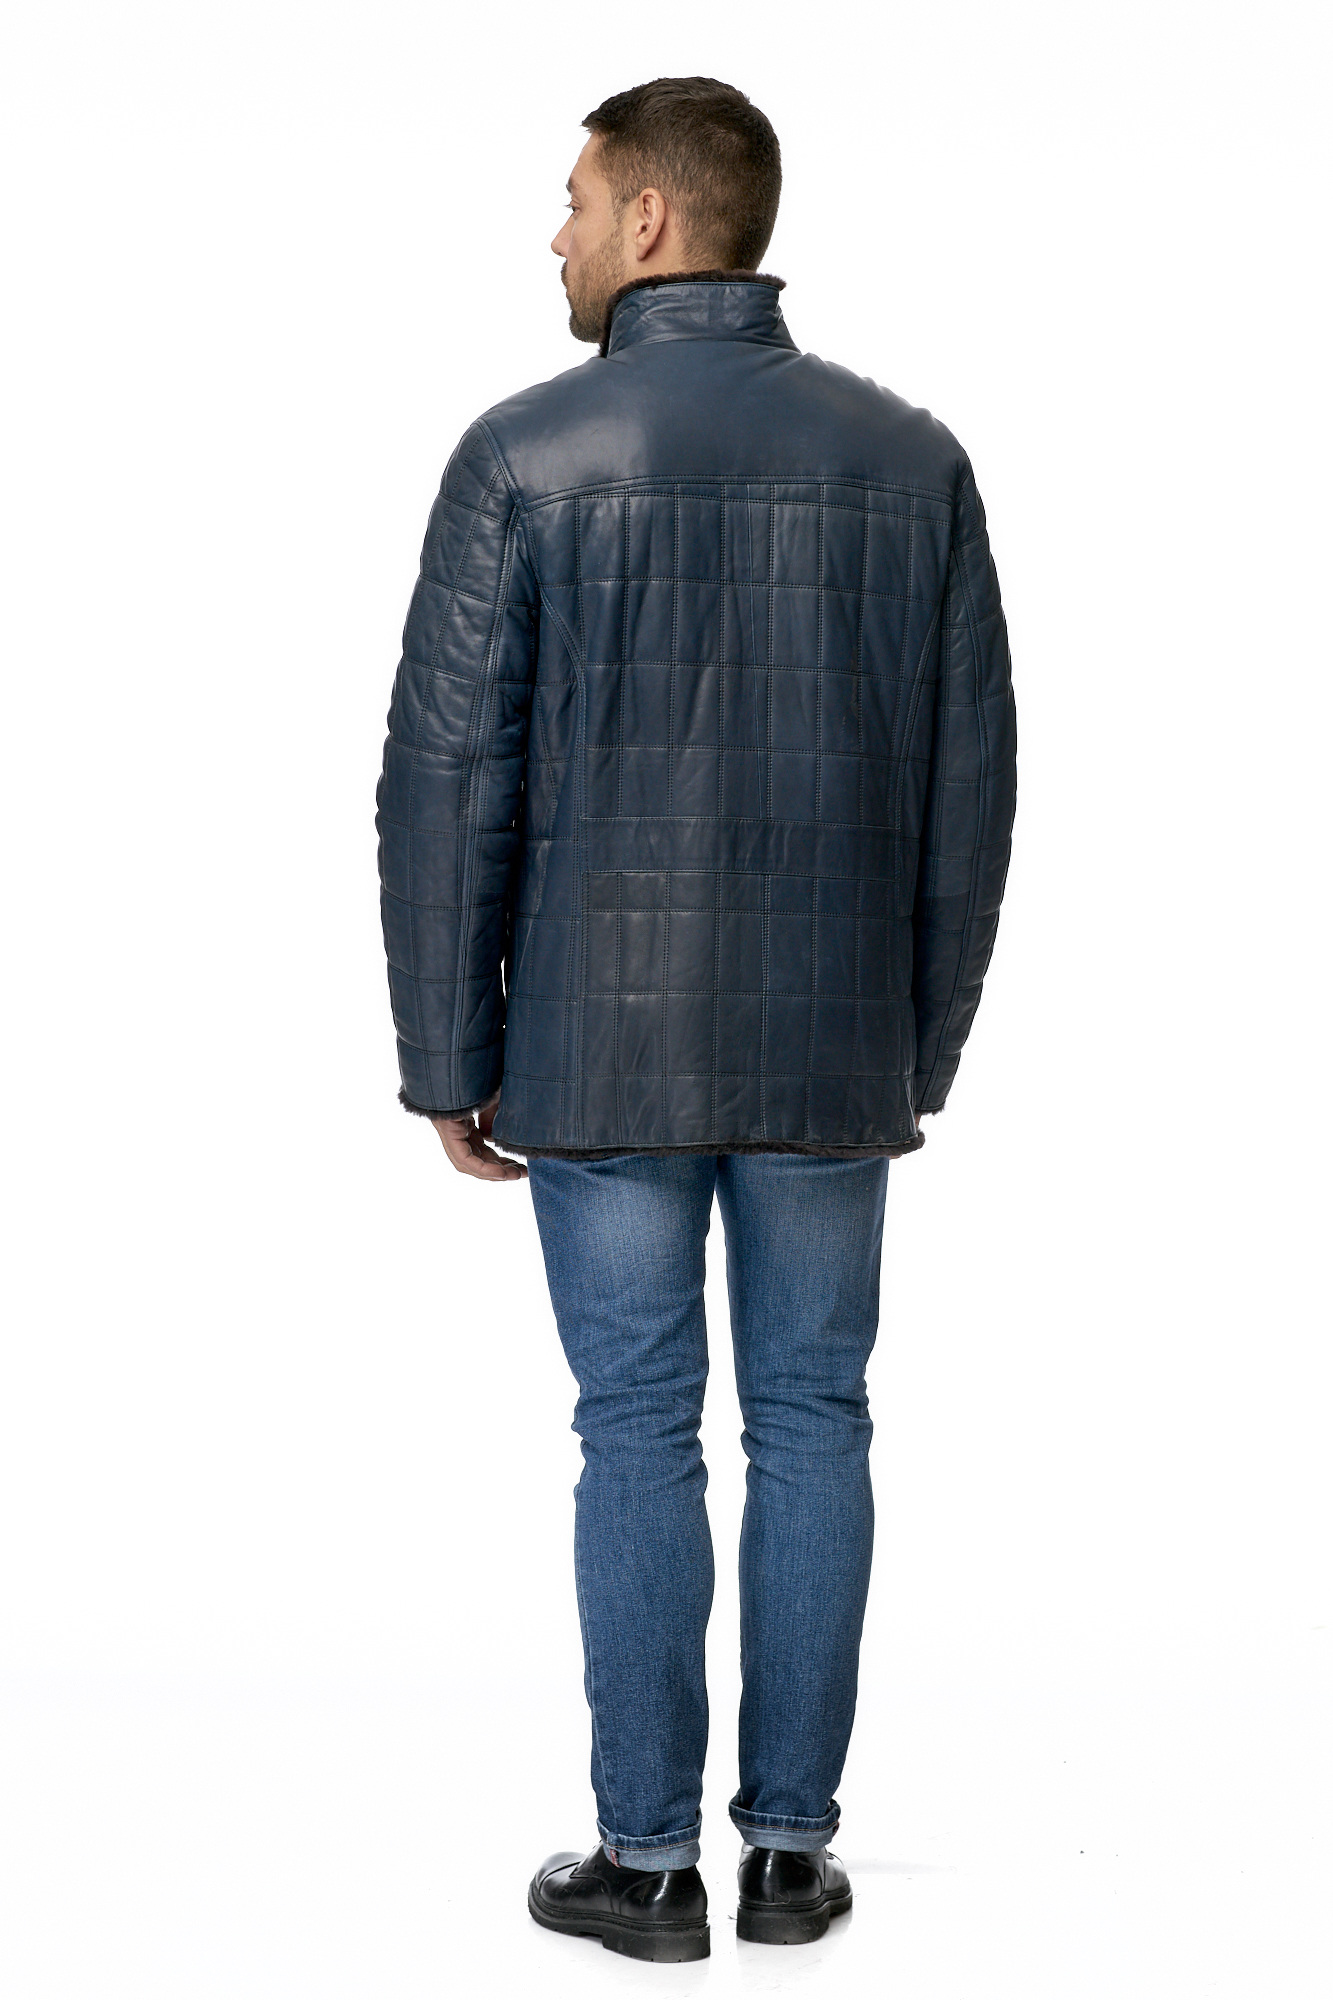 Мужская кожаная куртка из натуральной кожи на меху с воротником 8009055-3